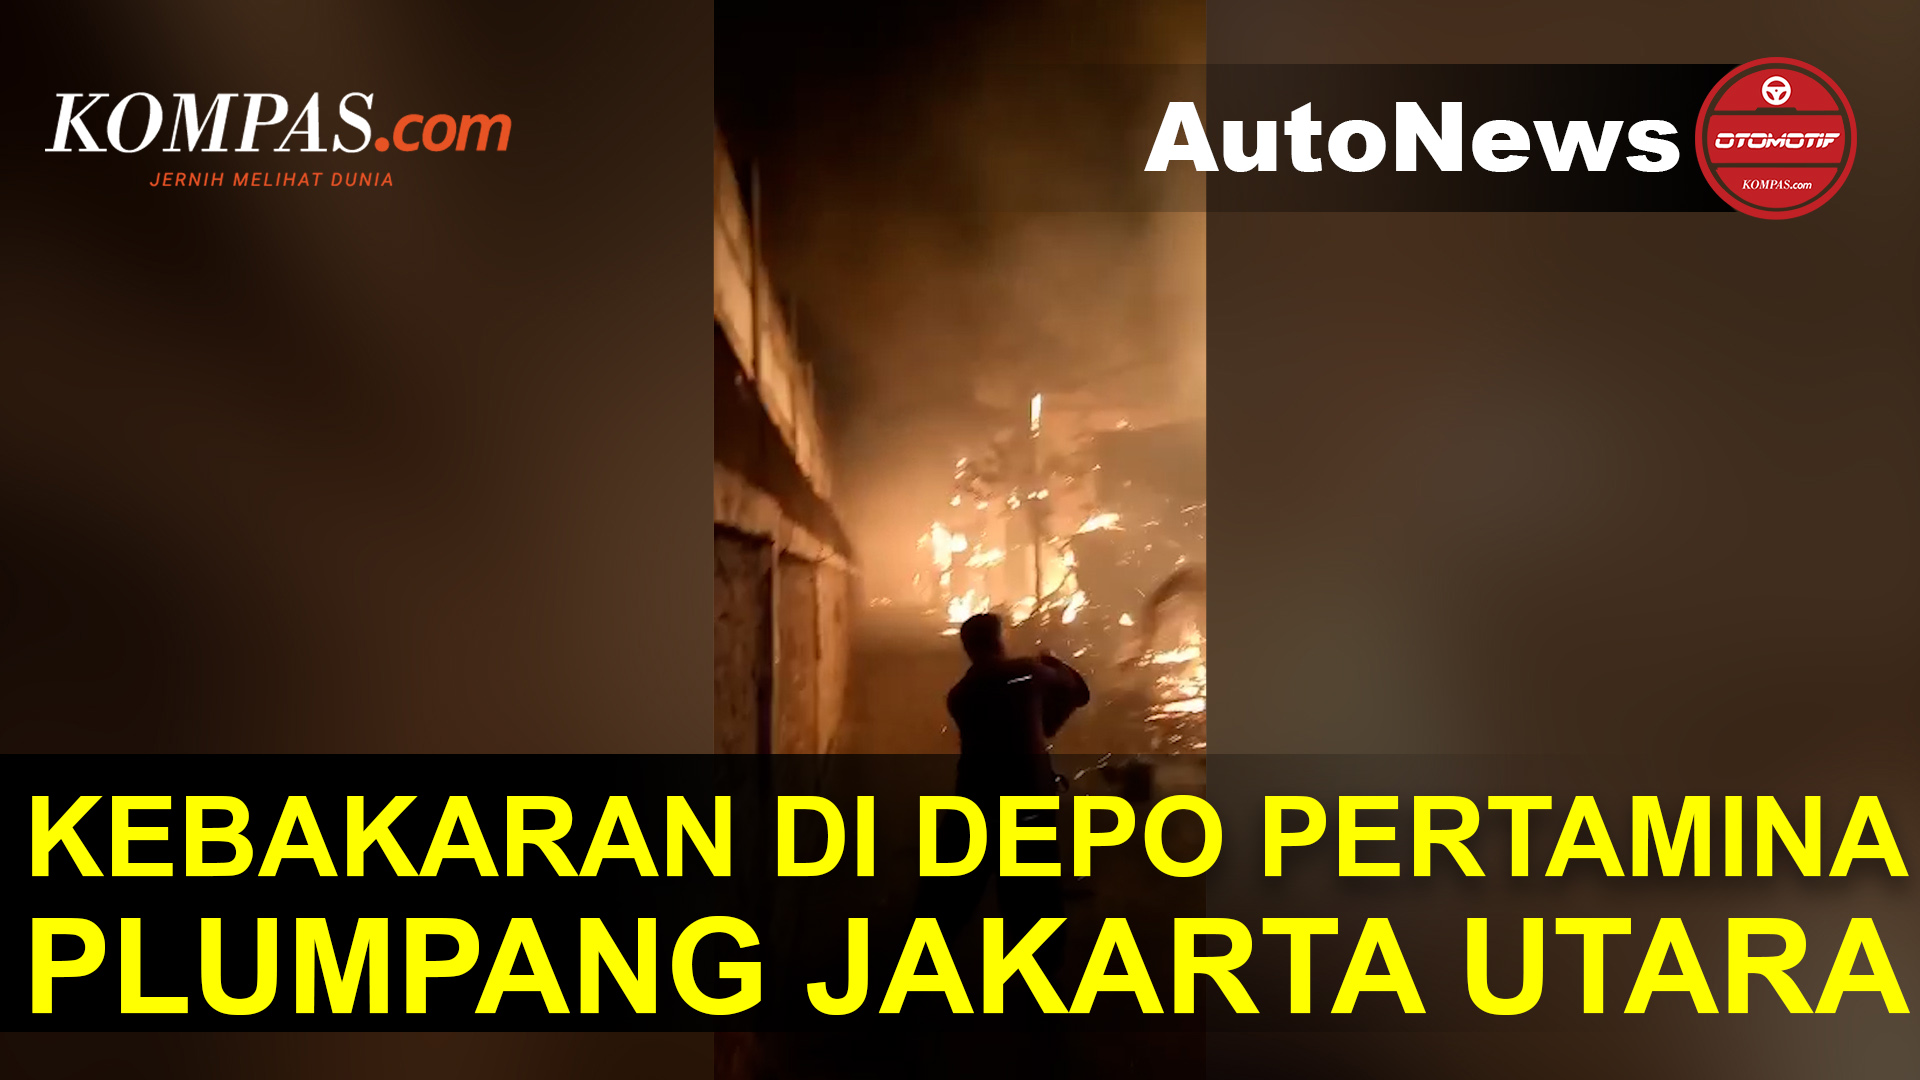 Kebakaran Besar di Depo Pertamina Plumpang Jakarta Utara, Diduga Ledakan Pipa Penyebabnya